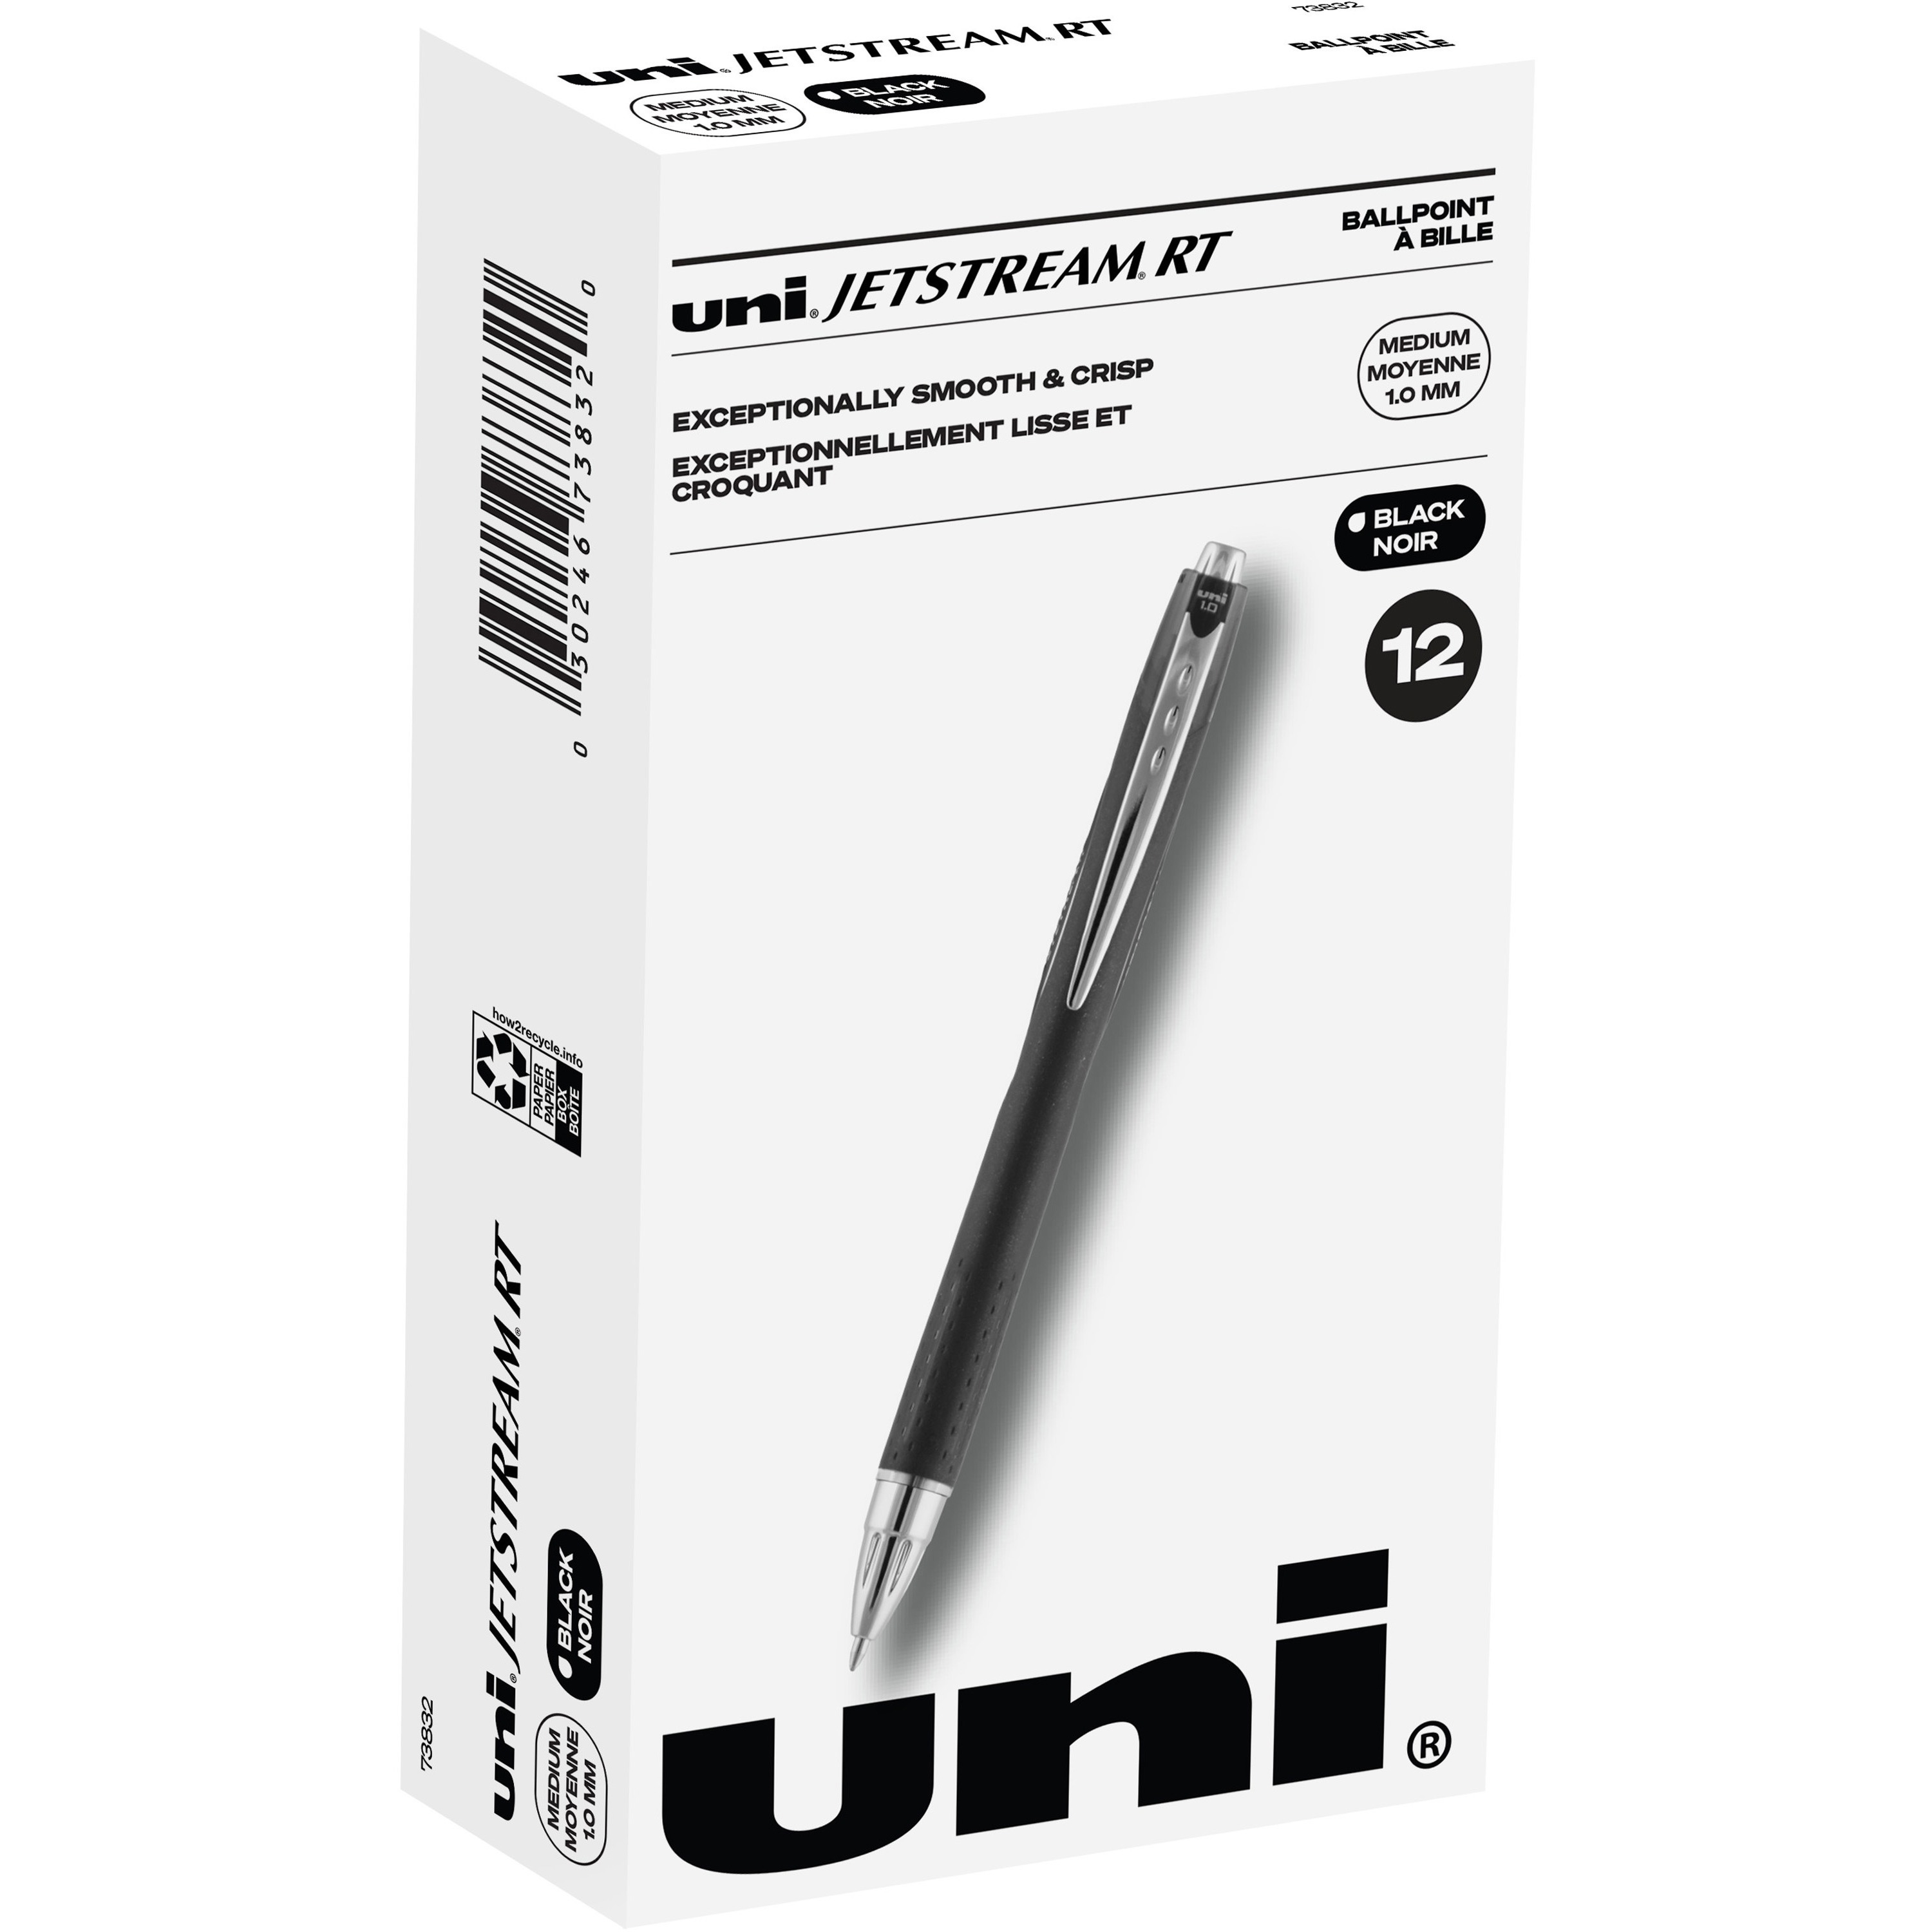 Integra Fineliner Ultra Fine Tip Marker Pen - Ultra Fine Pen Point